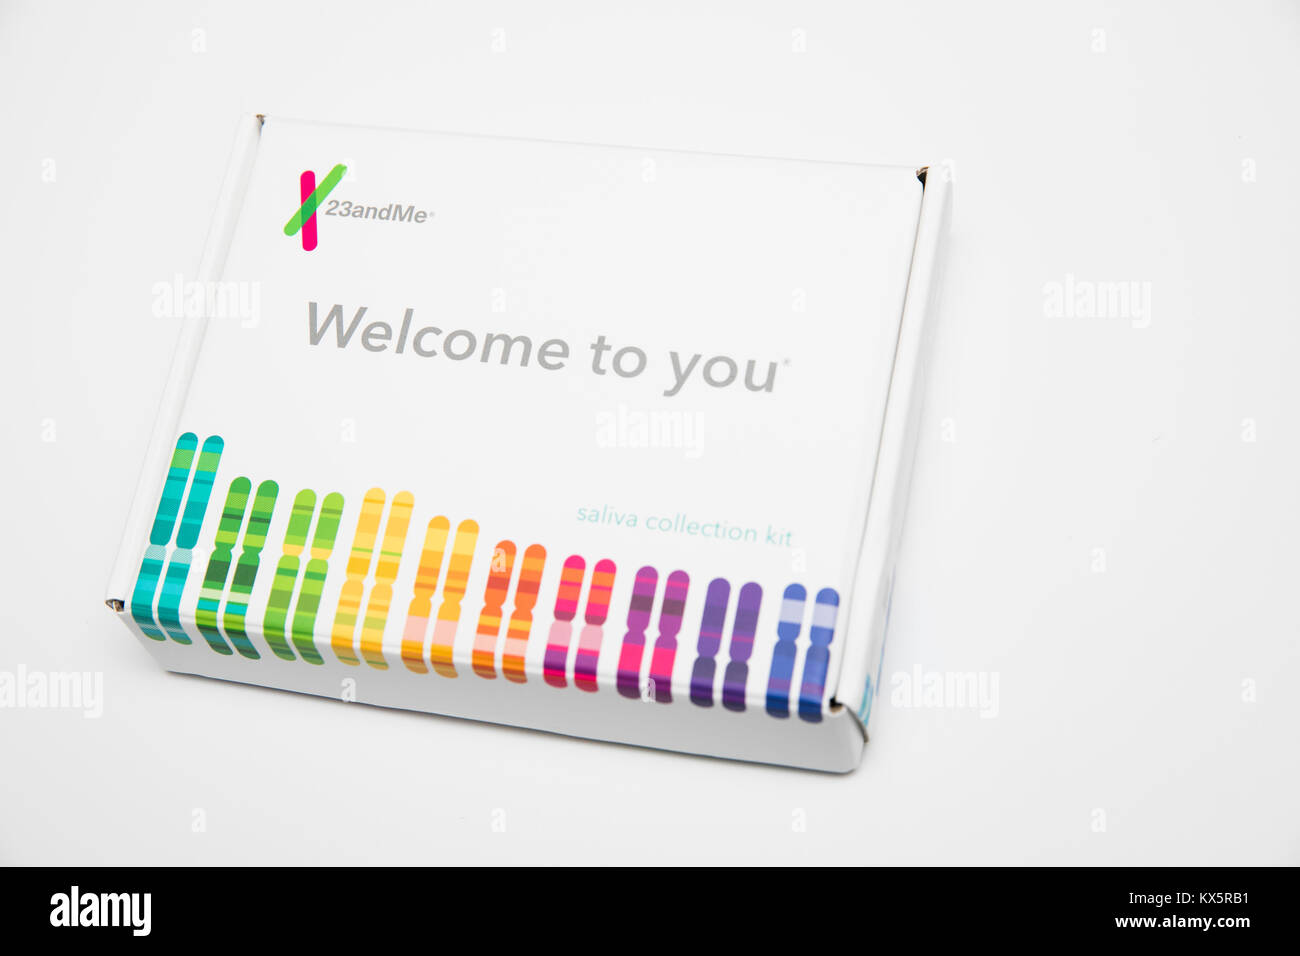 Le contenu d'une trousse d'analyse génétique 23andMe comme vu le 3 janvier 2018. Banque D'Images